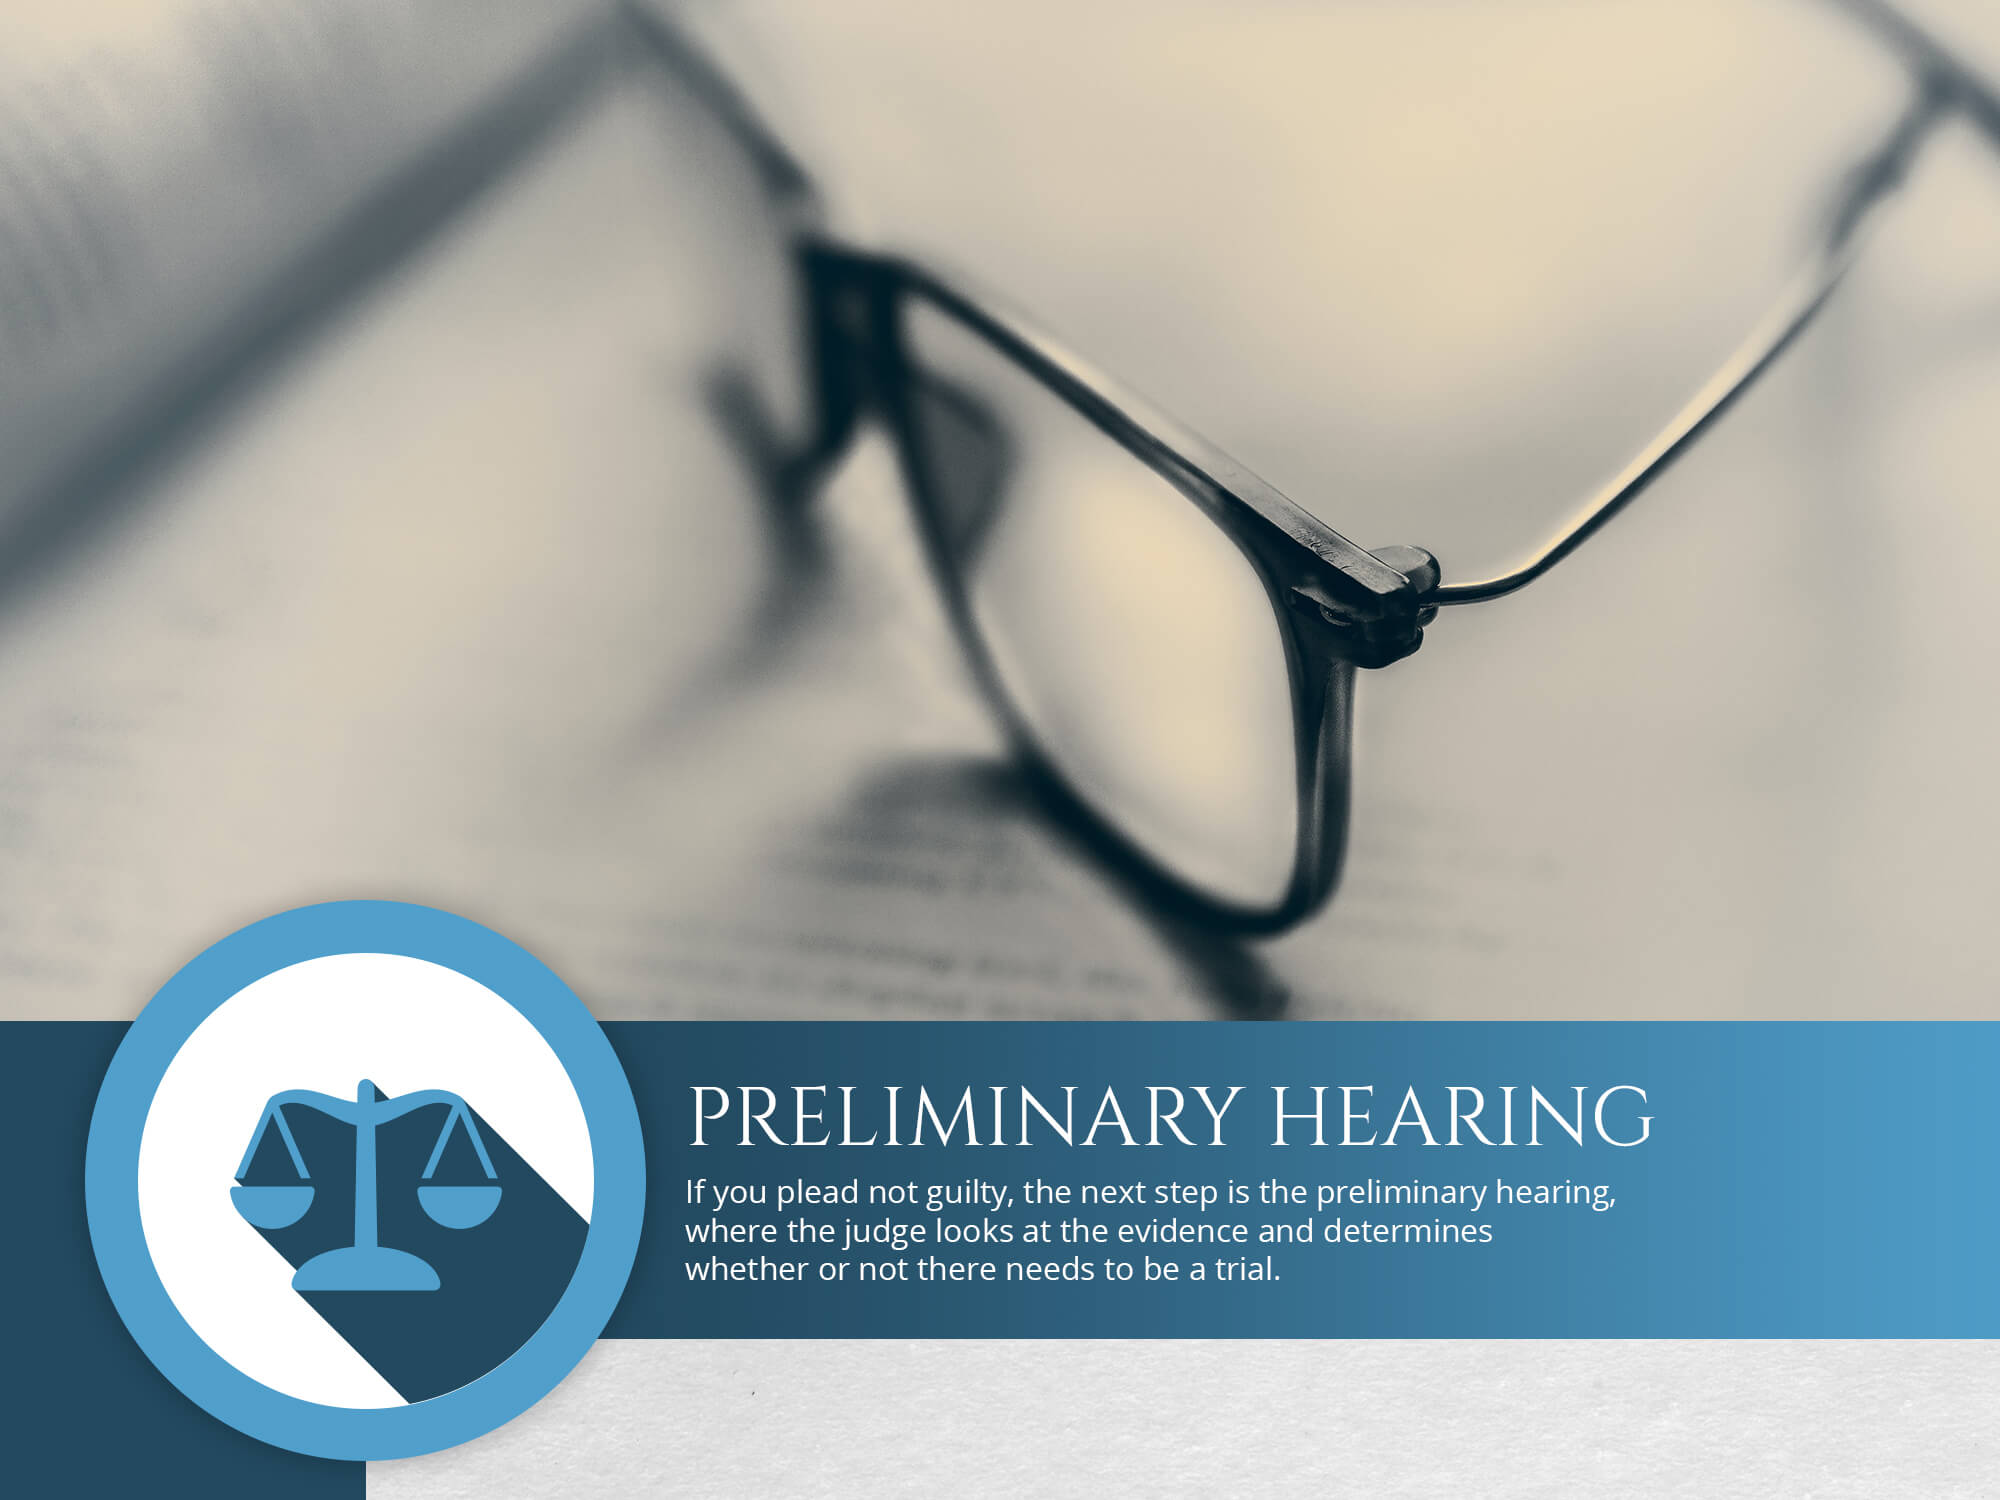 Preliminary Hearing